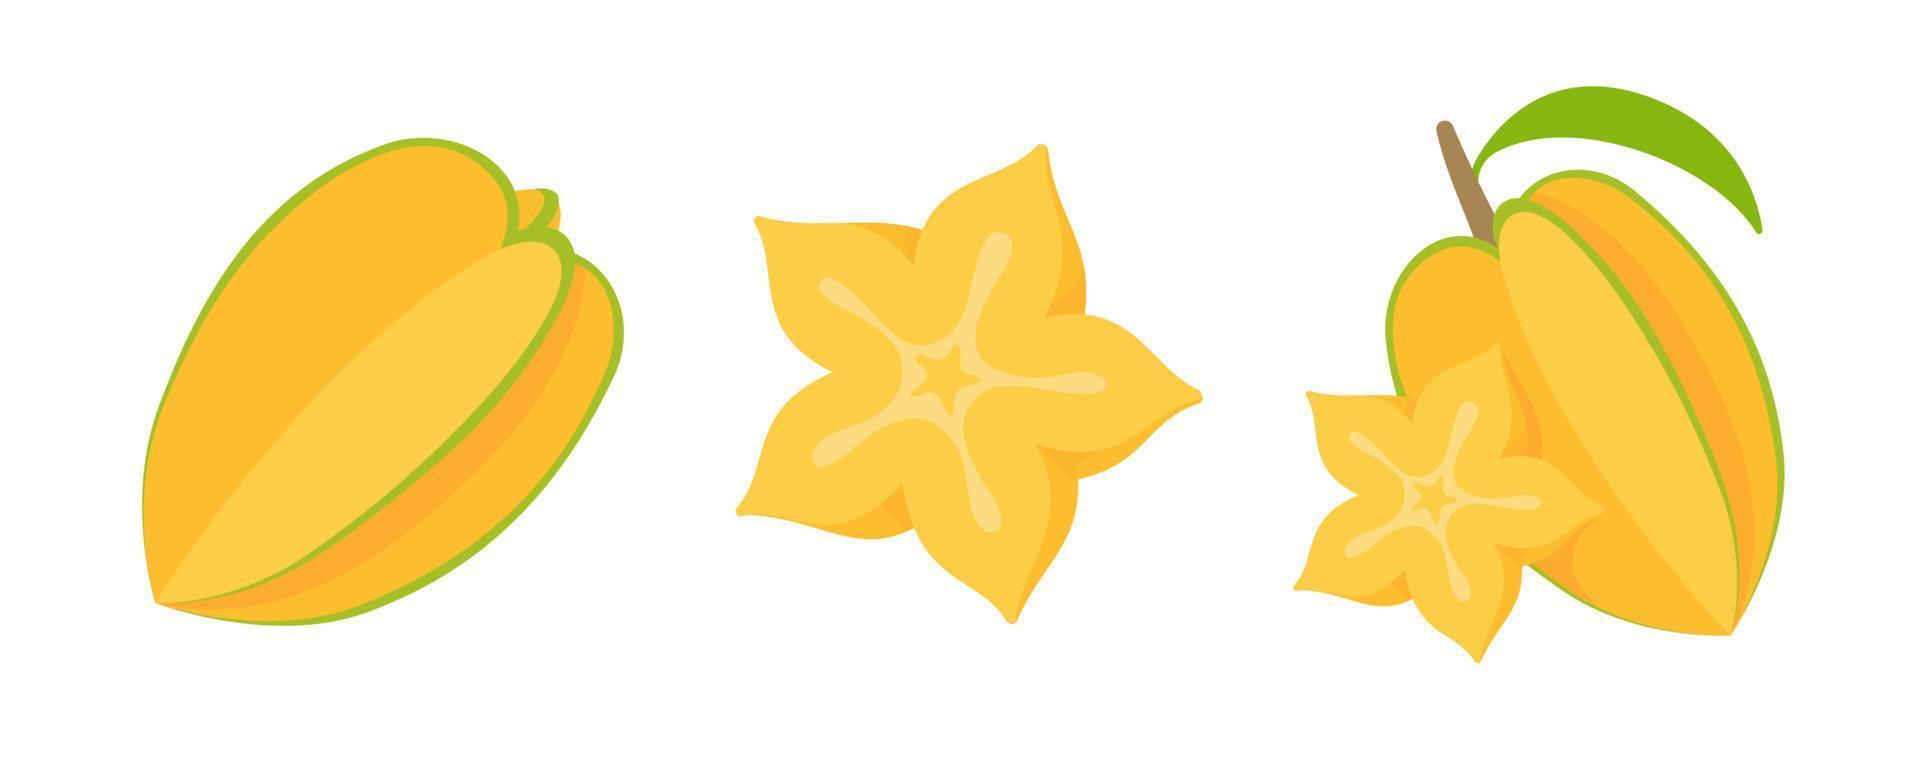 Carambola vector. star shaped yellow fruit vector